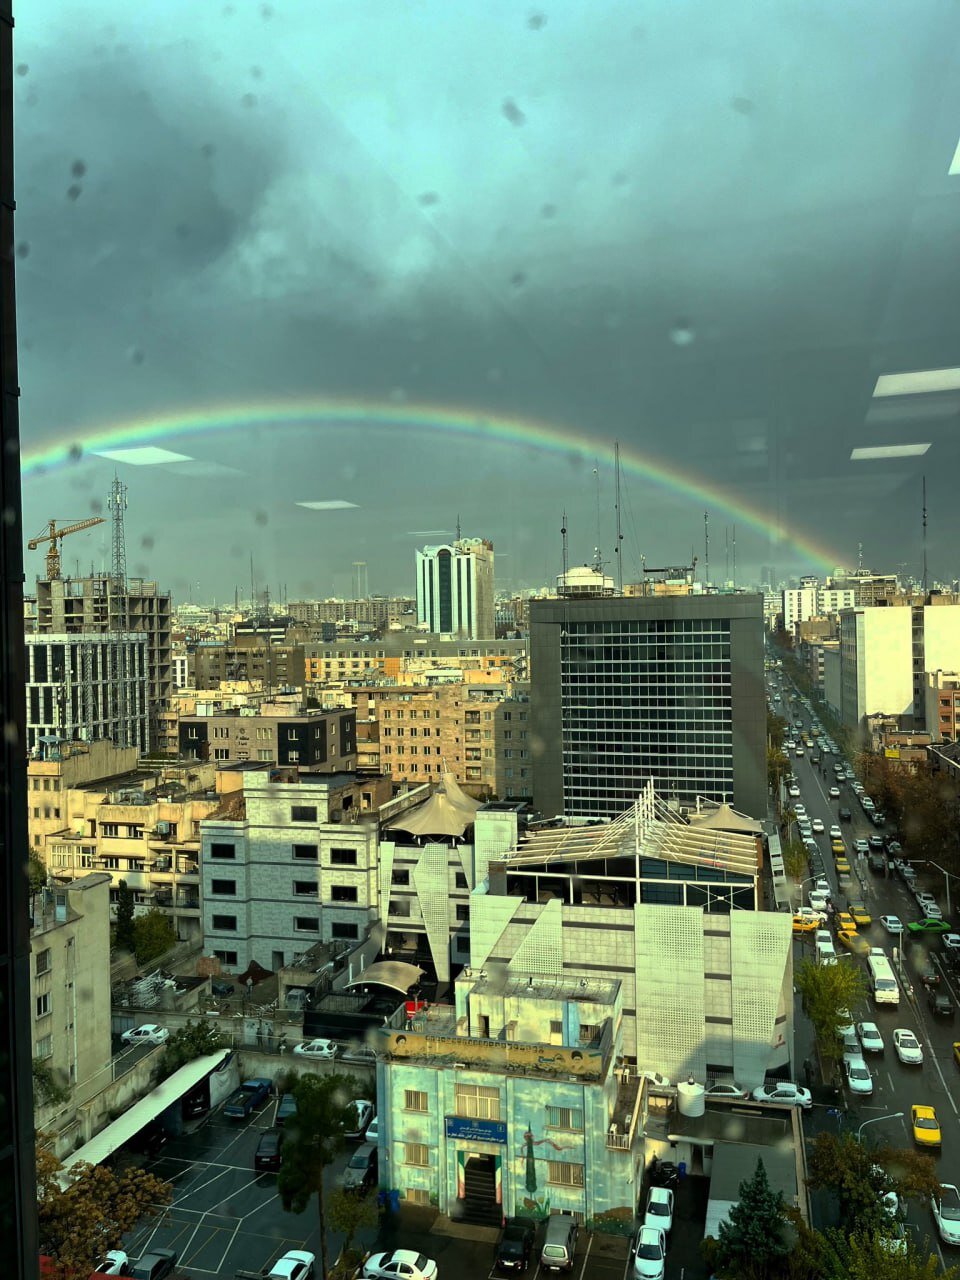 اتفاقی نادر در آسمان تهران/ عکس